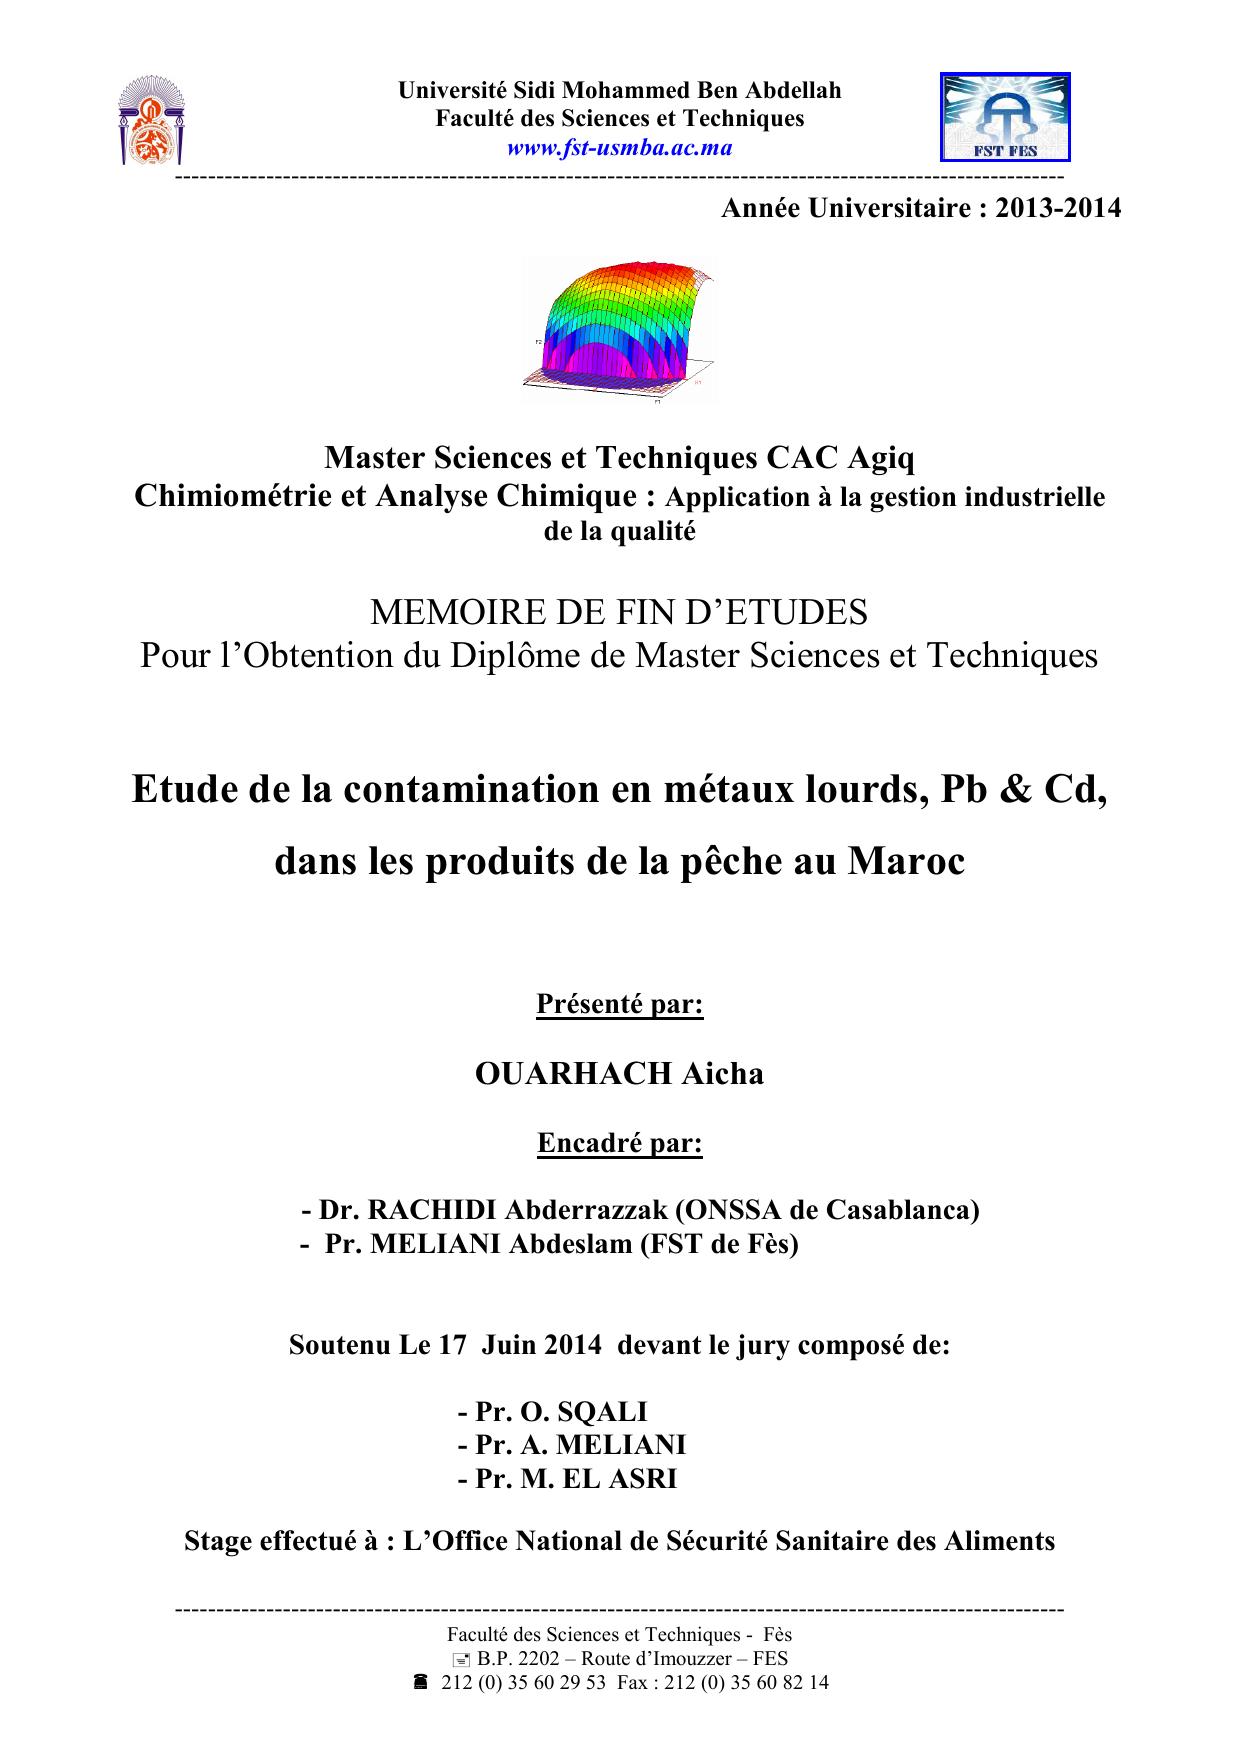 Etude de la contamination en métaux lourds, Pb & Cd, dans les produits de la pêche au Maroc